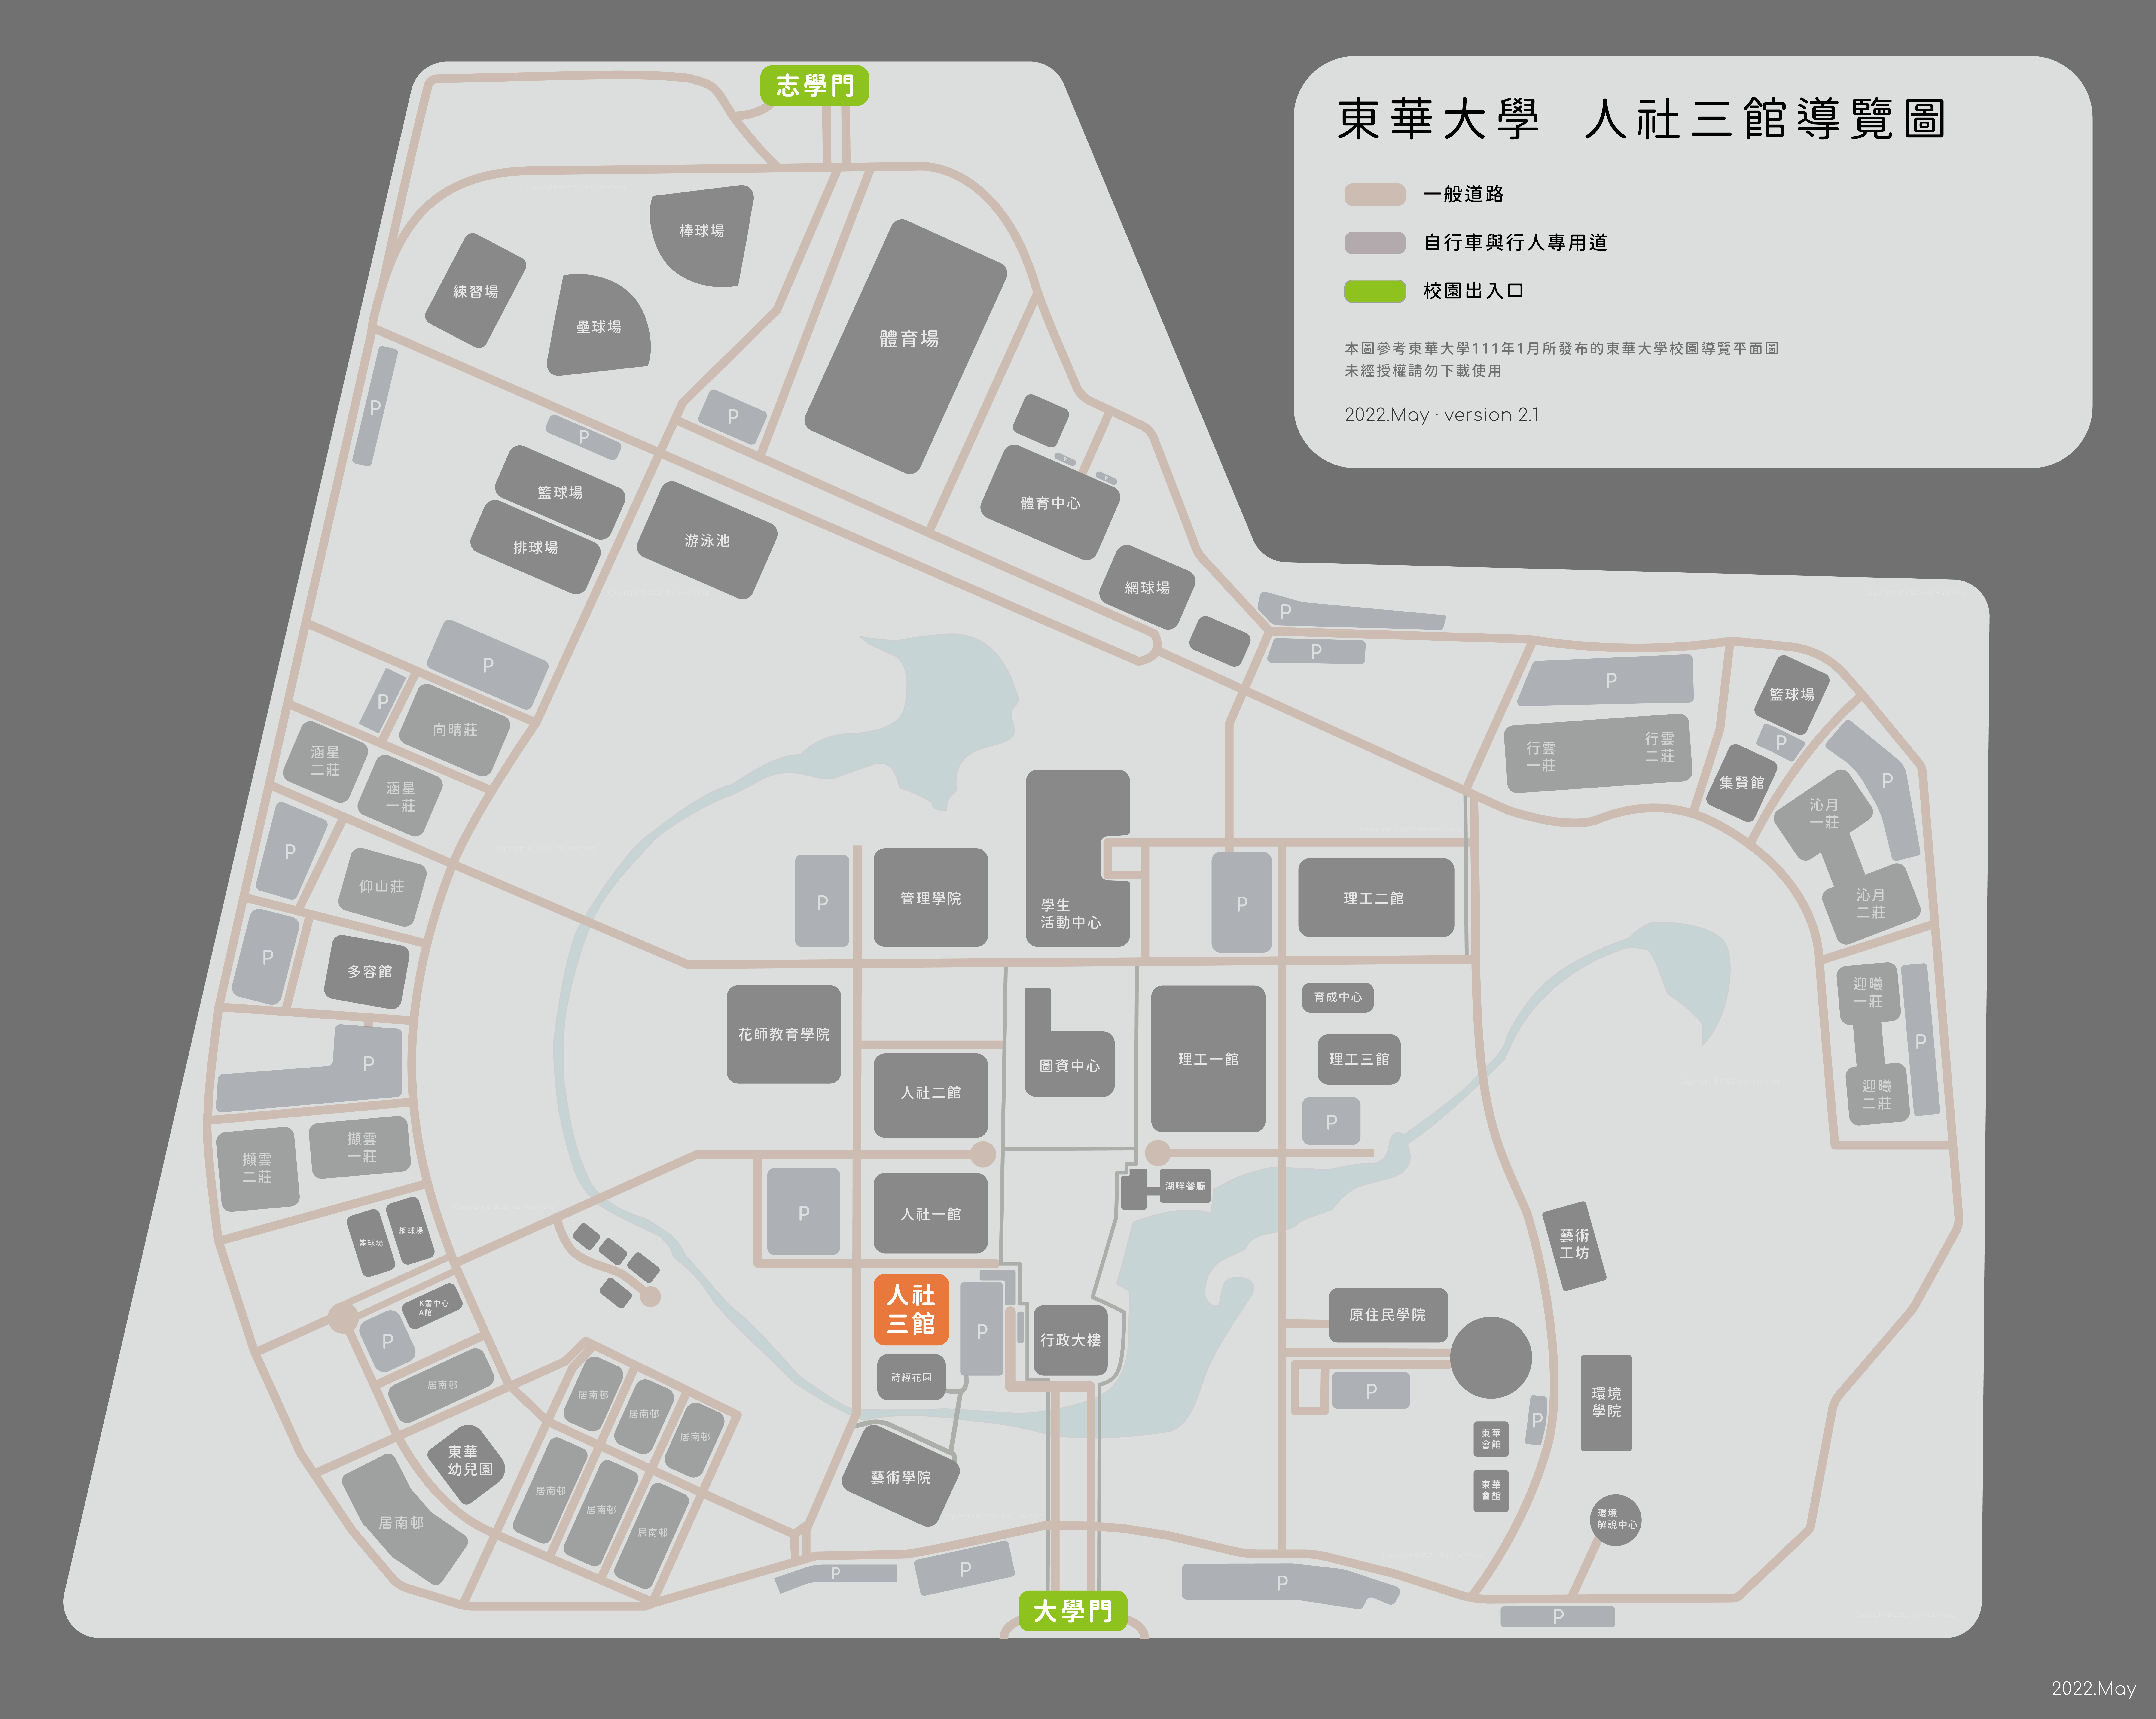 東華大學校園地圖 (人文三館)